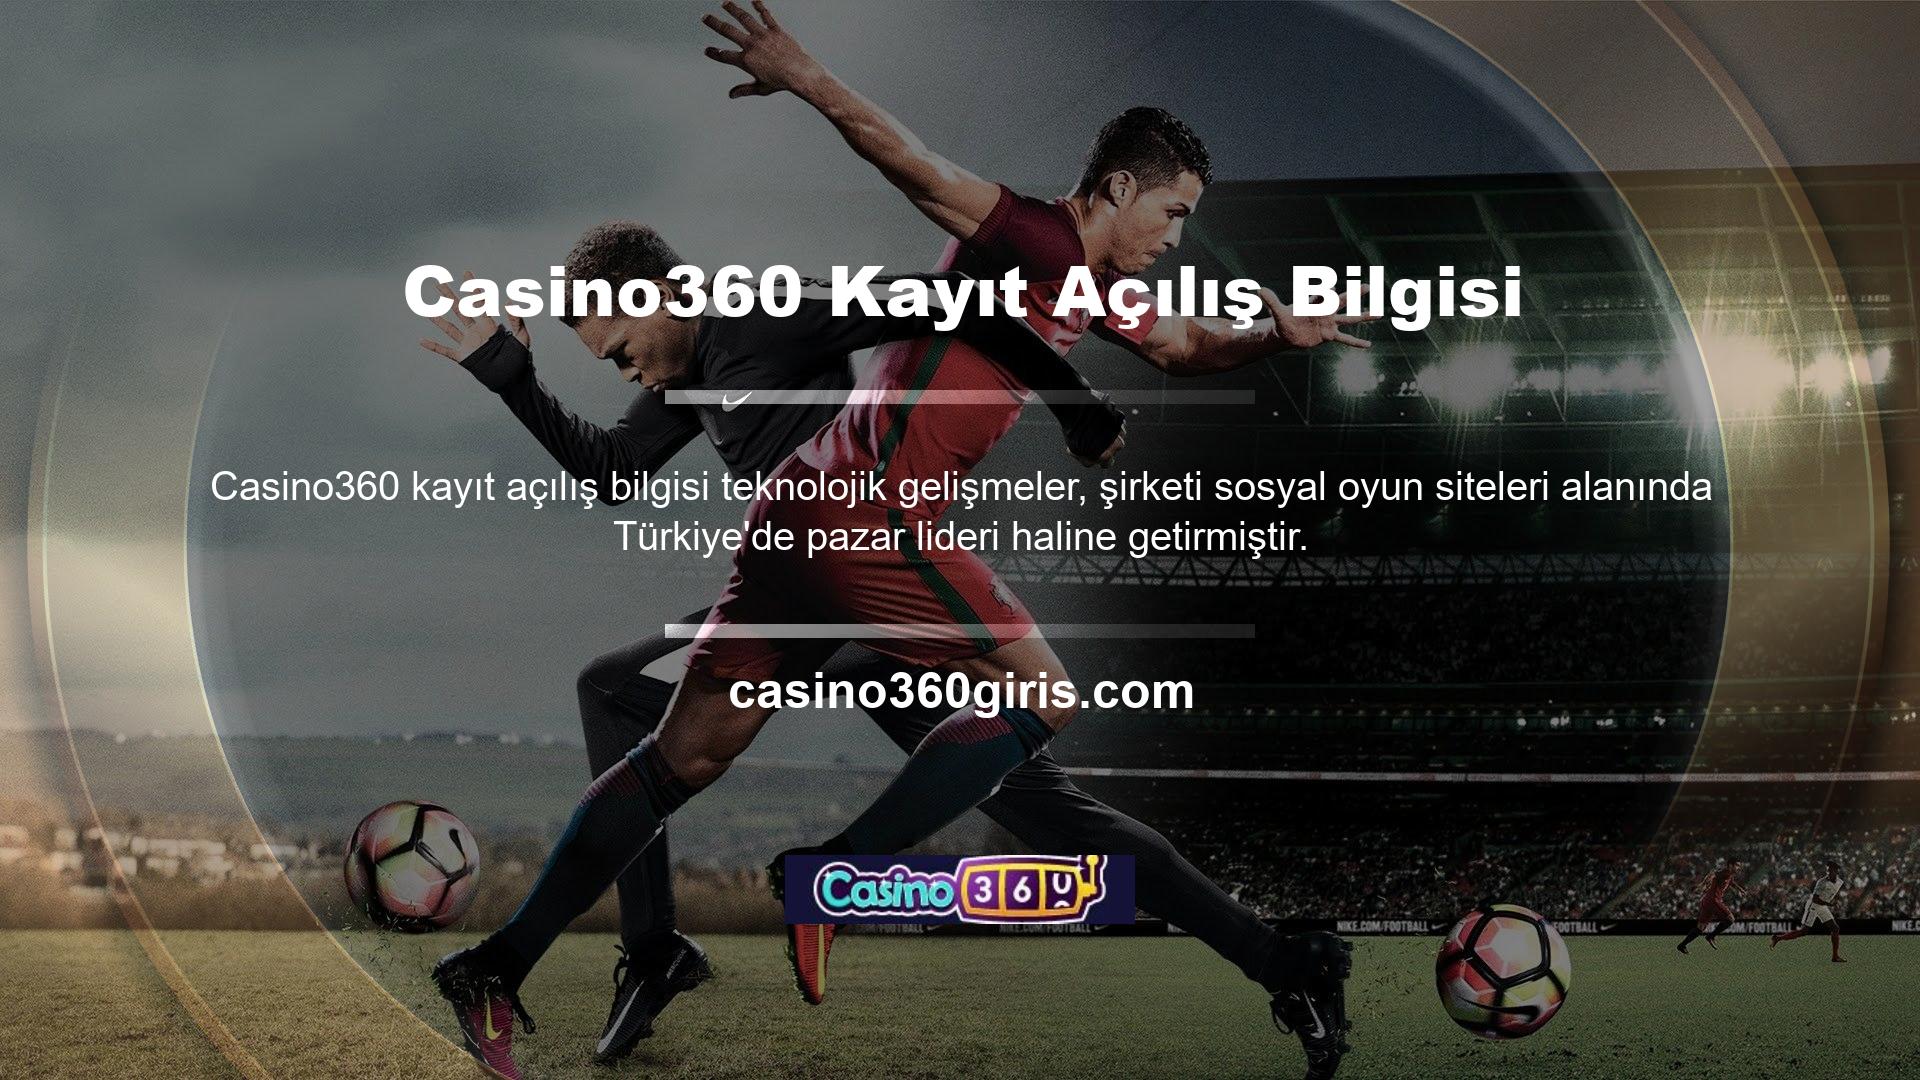 Casino360 göz atın ve birçok canlı casino oyunu bulacaksınız